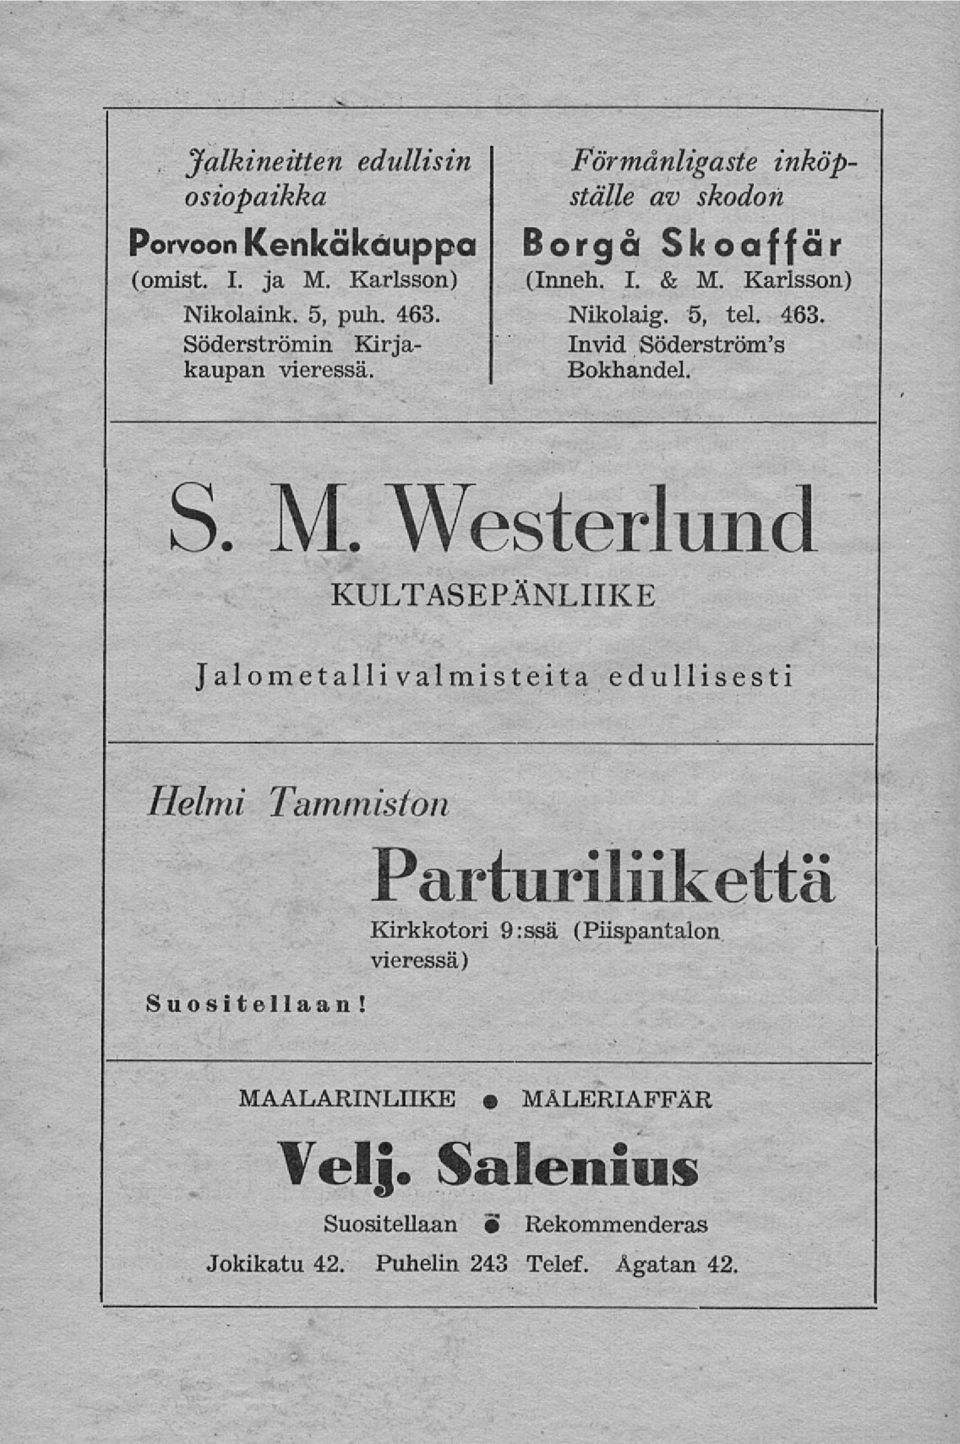 S. M. Westerlund KULTASEPÄNLIIKE Jalometalli valmisteita edullisesti Helmi Tammiston Parturiliikettä Kirkkotori 9:ssä (Piispantalon